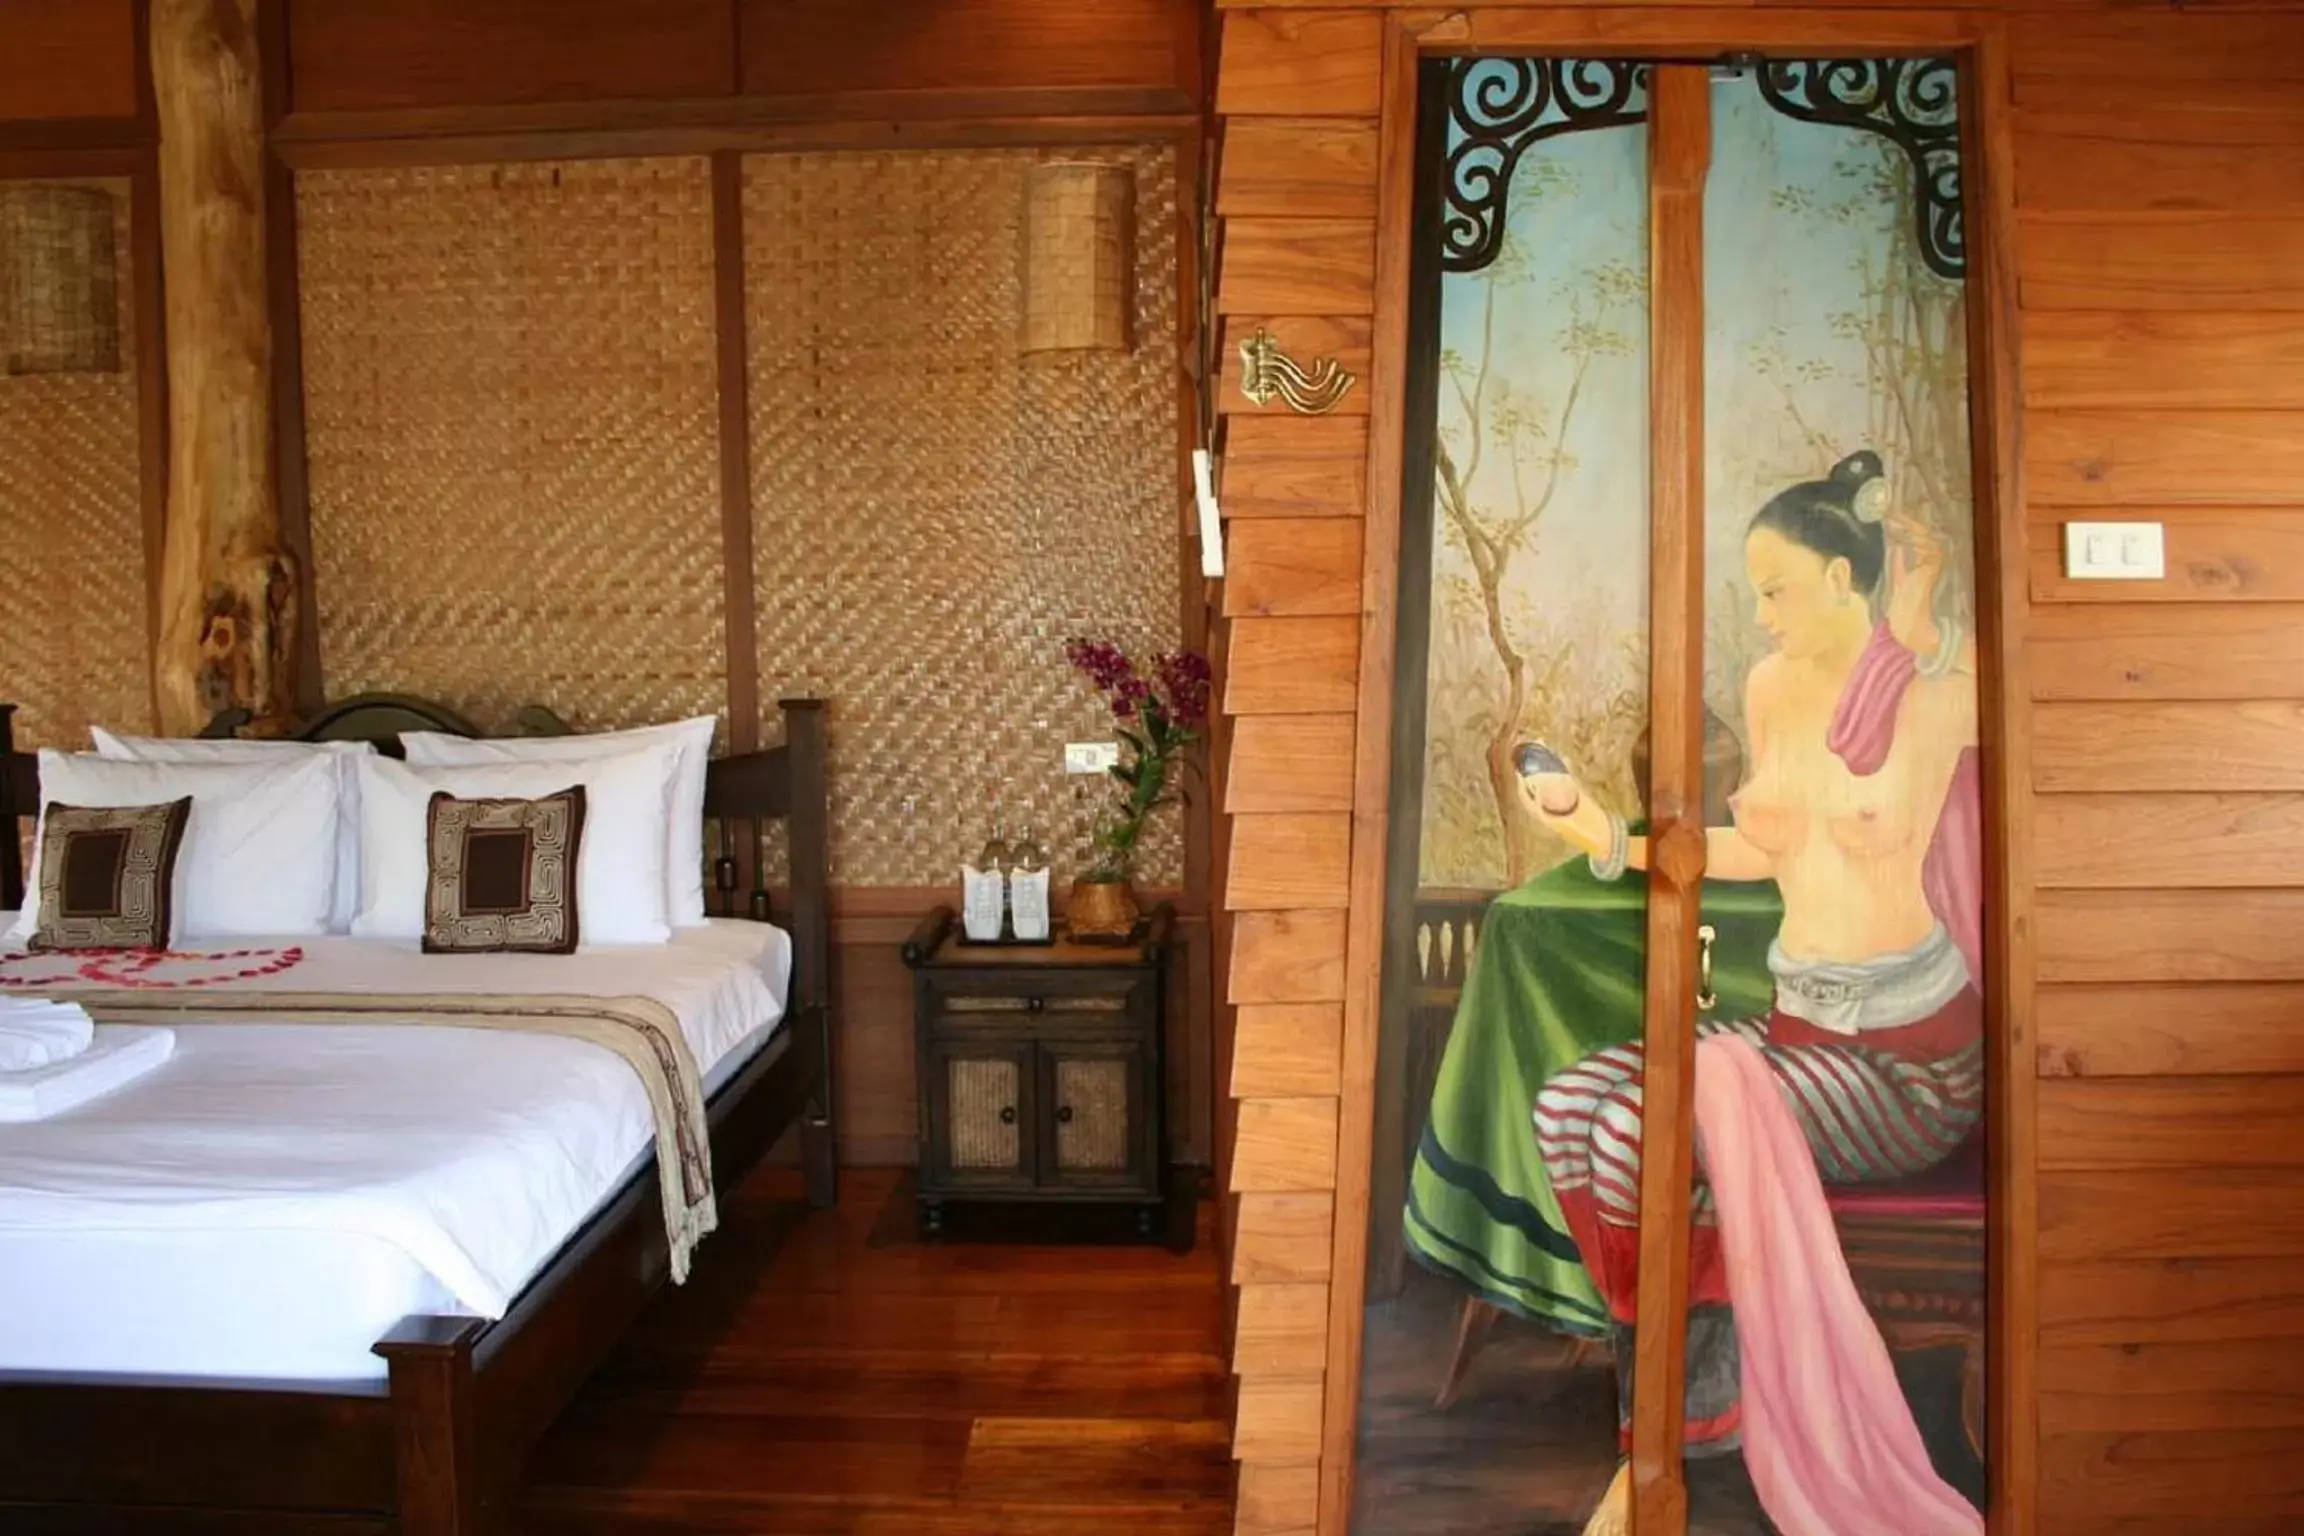 Decorative detail, Bed in Pai Vimaan Resort